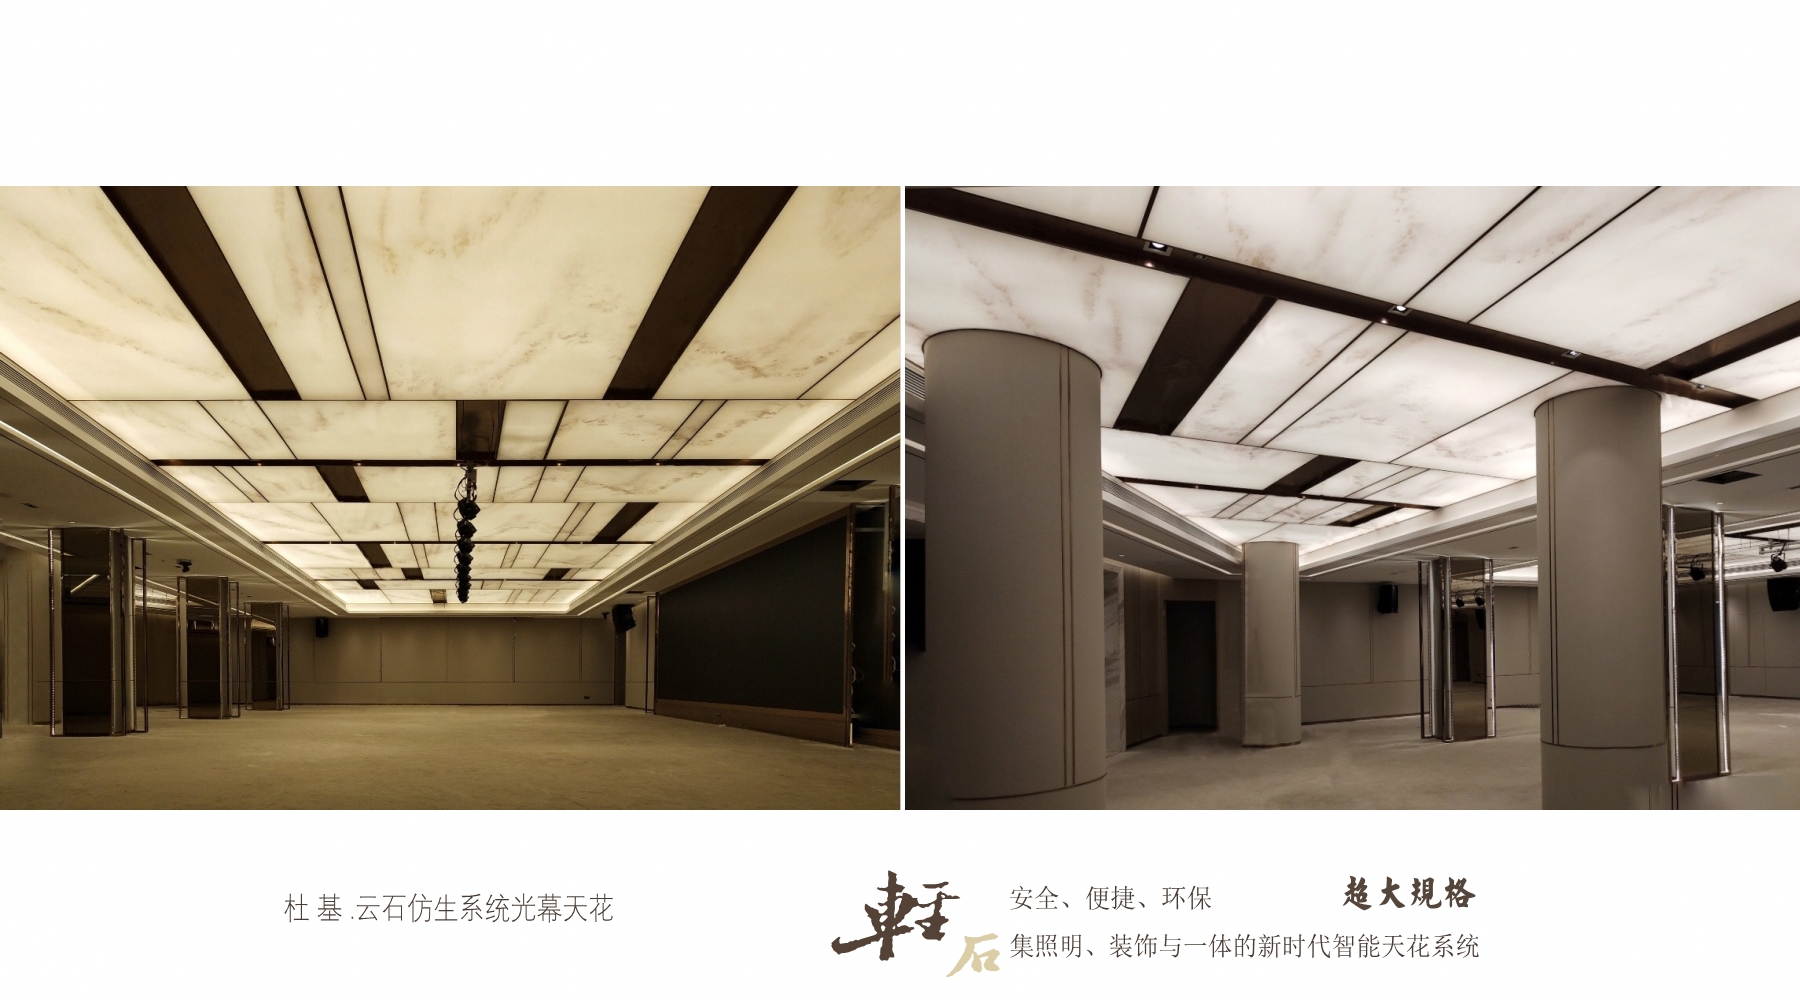 上海市仿生系列光幕天花 大理石纹膜材厂家仿生系列光幕天花 大理石纹膜材